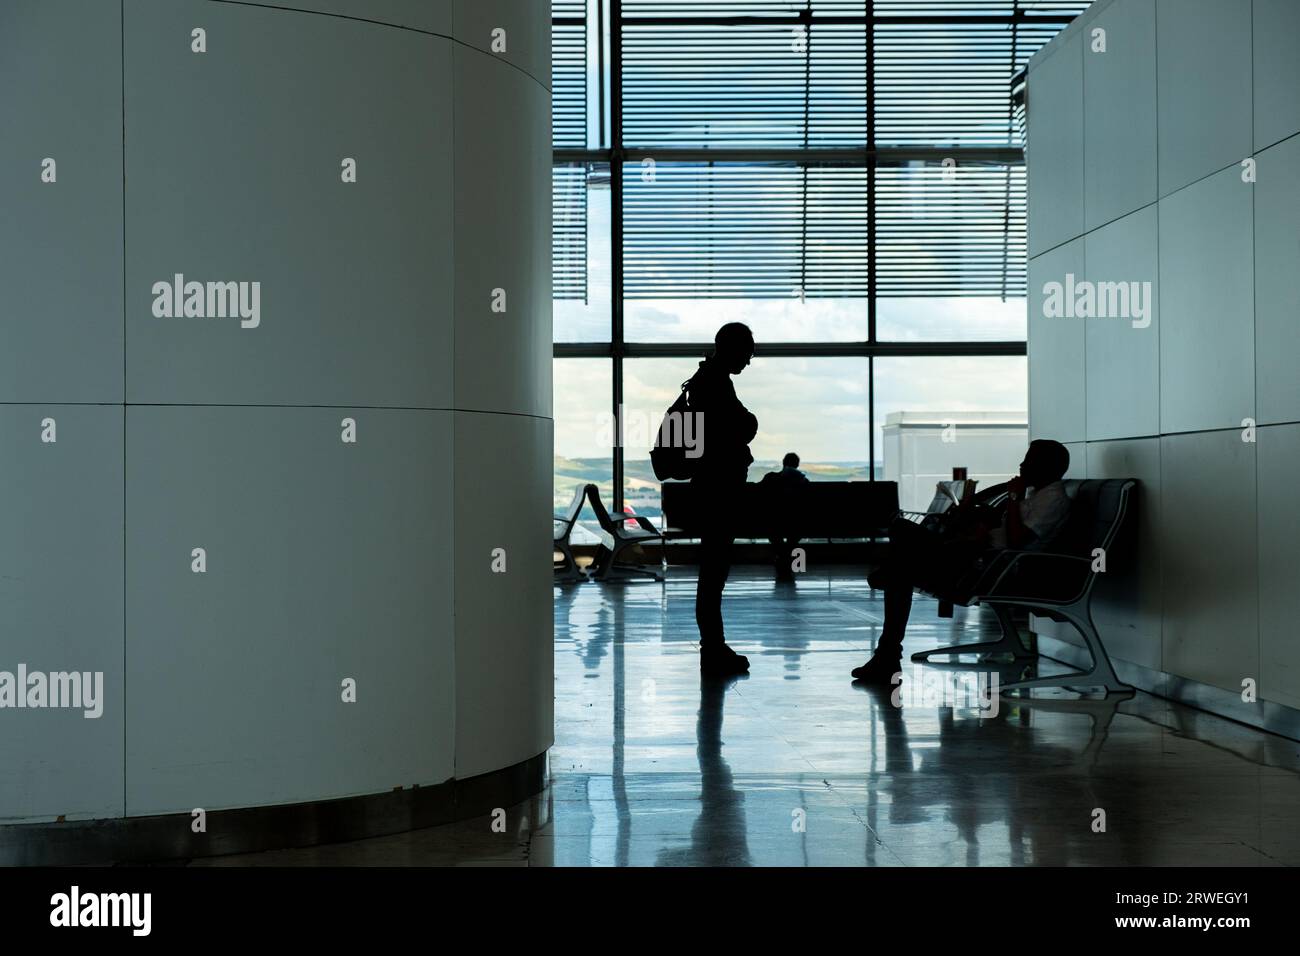 Sagome dei passeggeri nel terminal T4 dell'aeroporto di Madrid. Adolfo Suarez-Barajas Foto Stock